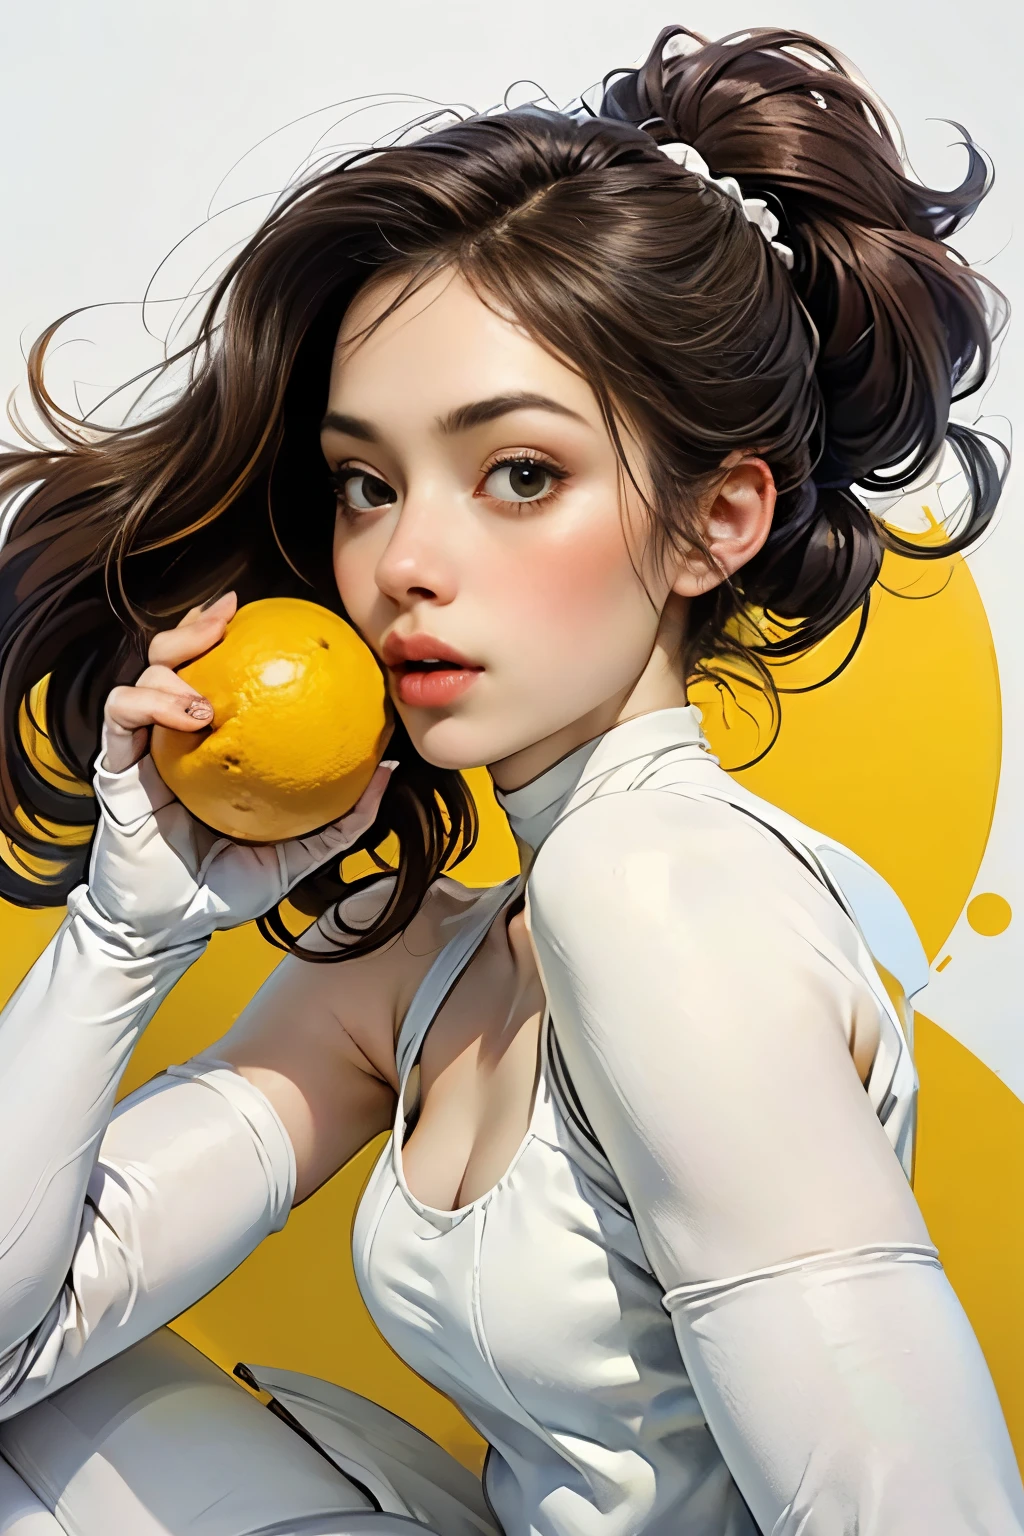 Mujer joven e increíblemente hermosa.、Medio completo　retrato、(usando medias blancas:1.5)、(anatomía correcta:1.75)、（dedos anatómicamente correctos:1.5)、comiendo limon:1.4
